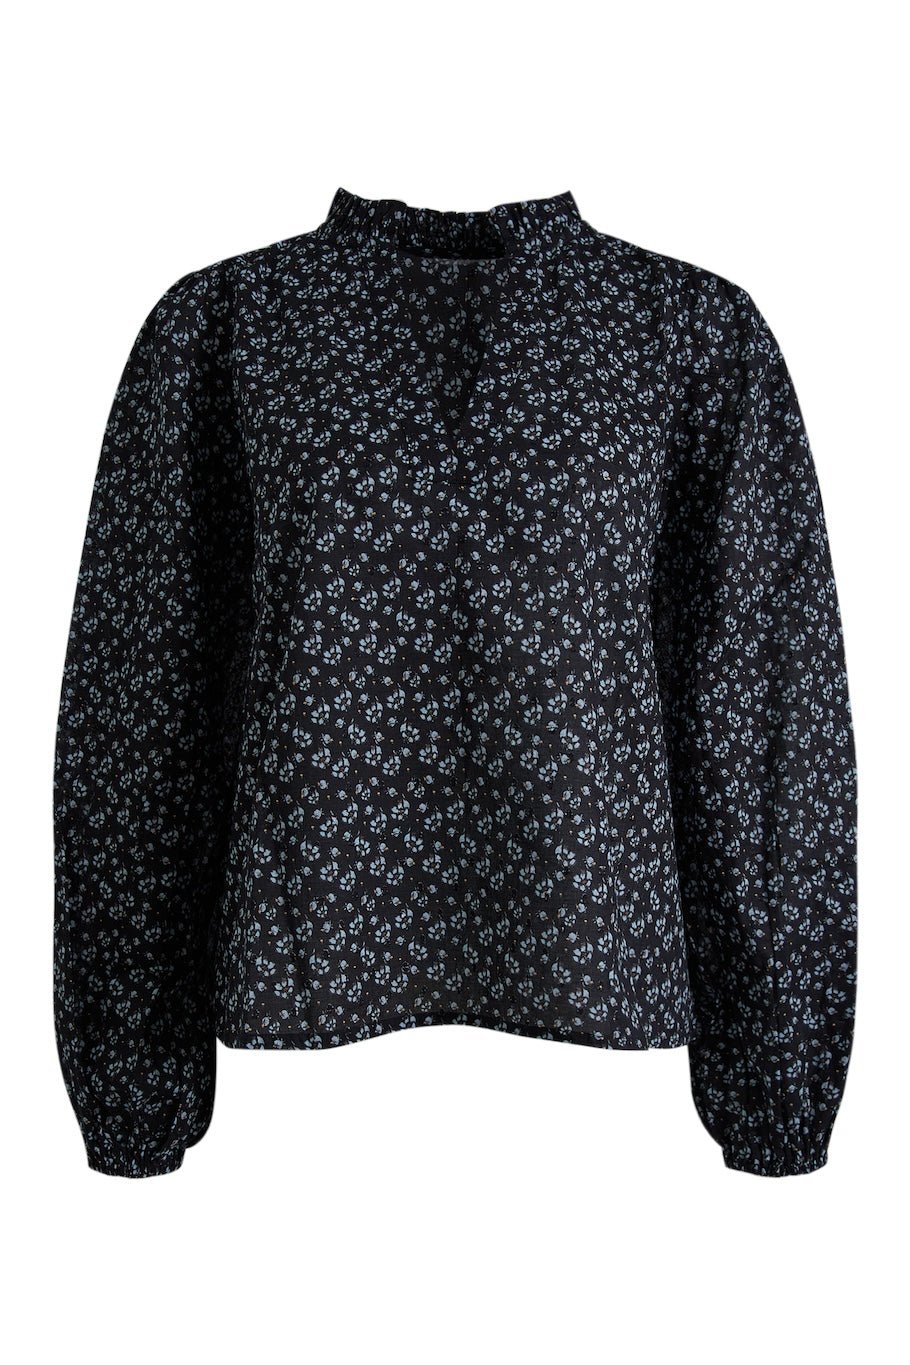 Karro Blouse Black Lupin Print | Skjorter og bluser | Smuk - Dameklær på nett